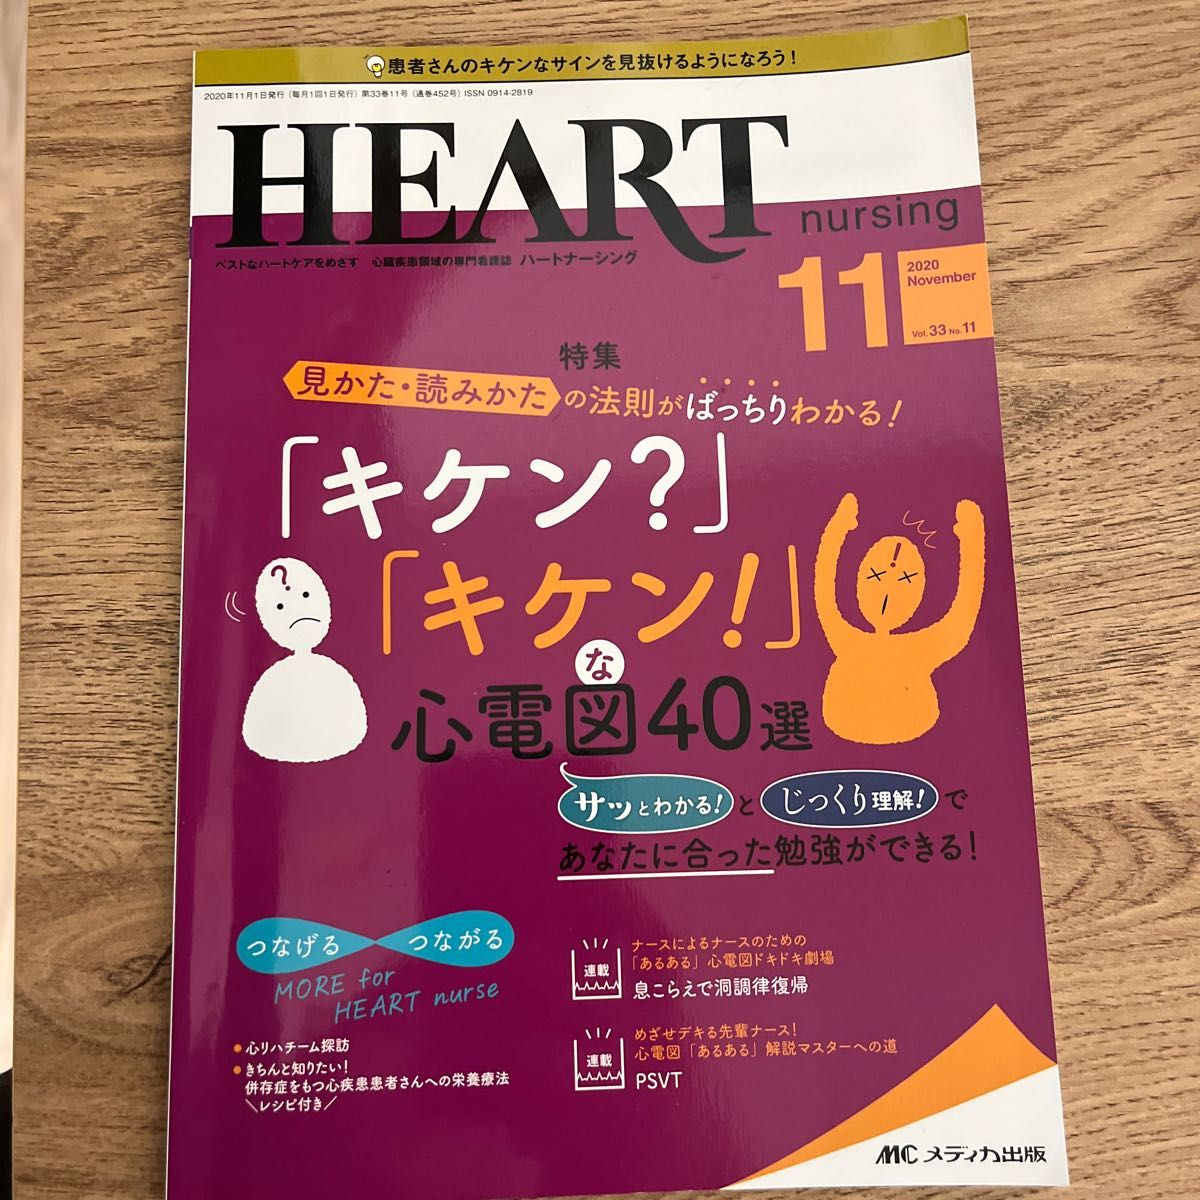 ハートナーシング ベストなハートケアをめざす心臓疾患領域の専門看護誌 第33巻11号 (2020-11) 危険な心電図40選